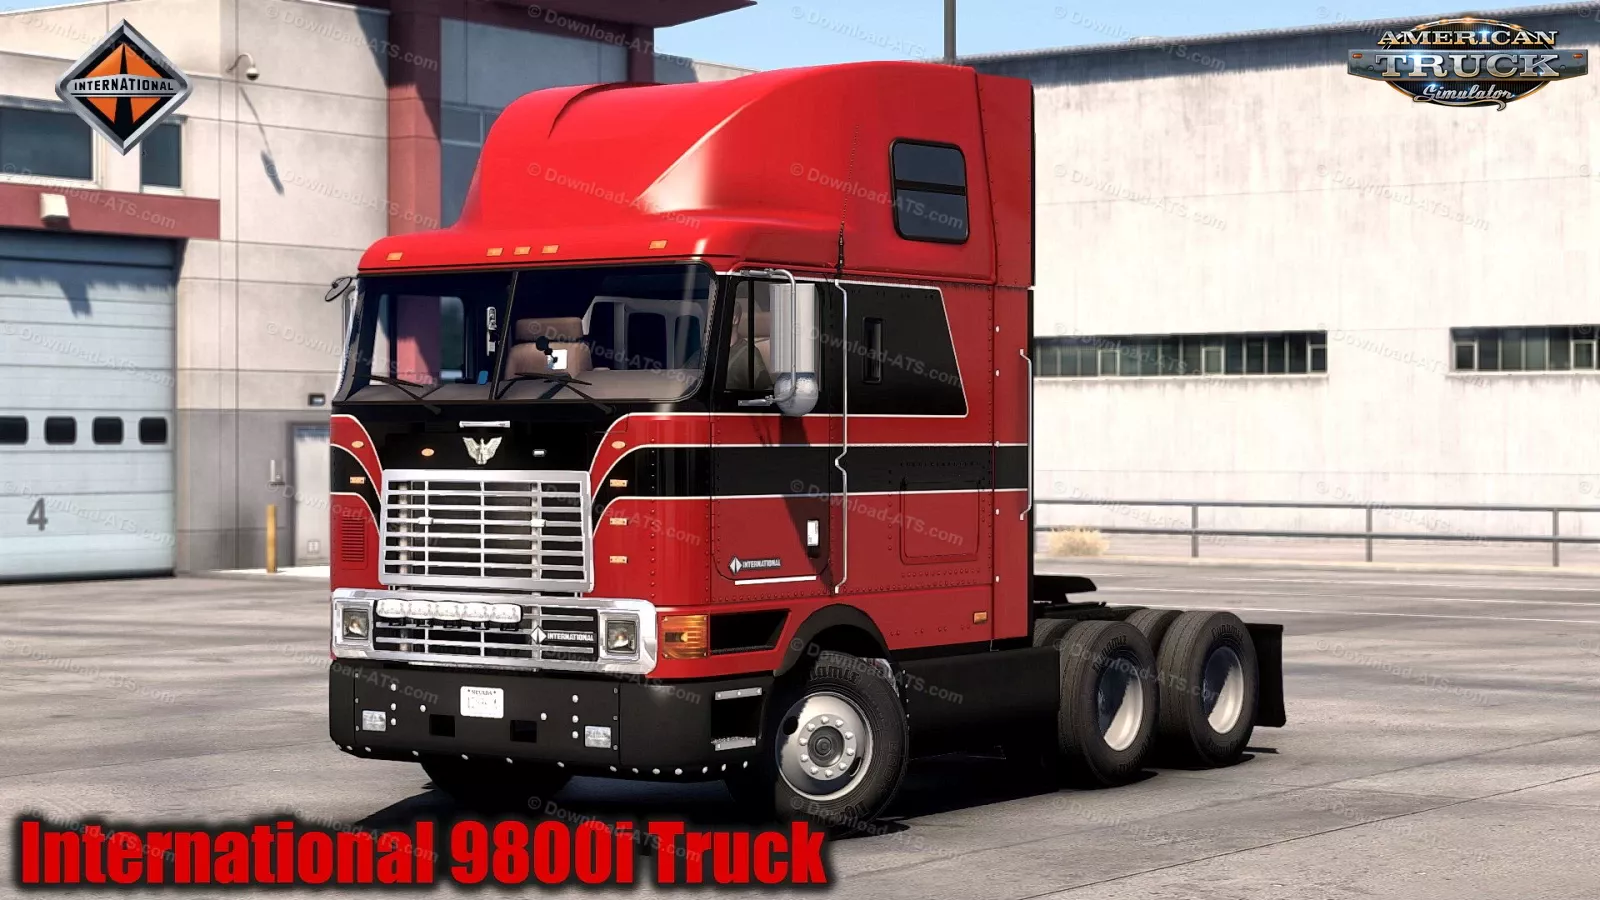 International 9800i Truck + Interior v1.3.2 (1.49.x) for ATS